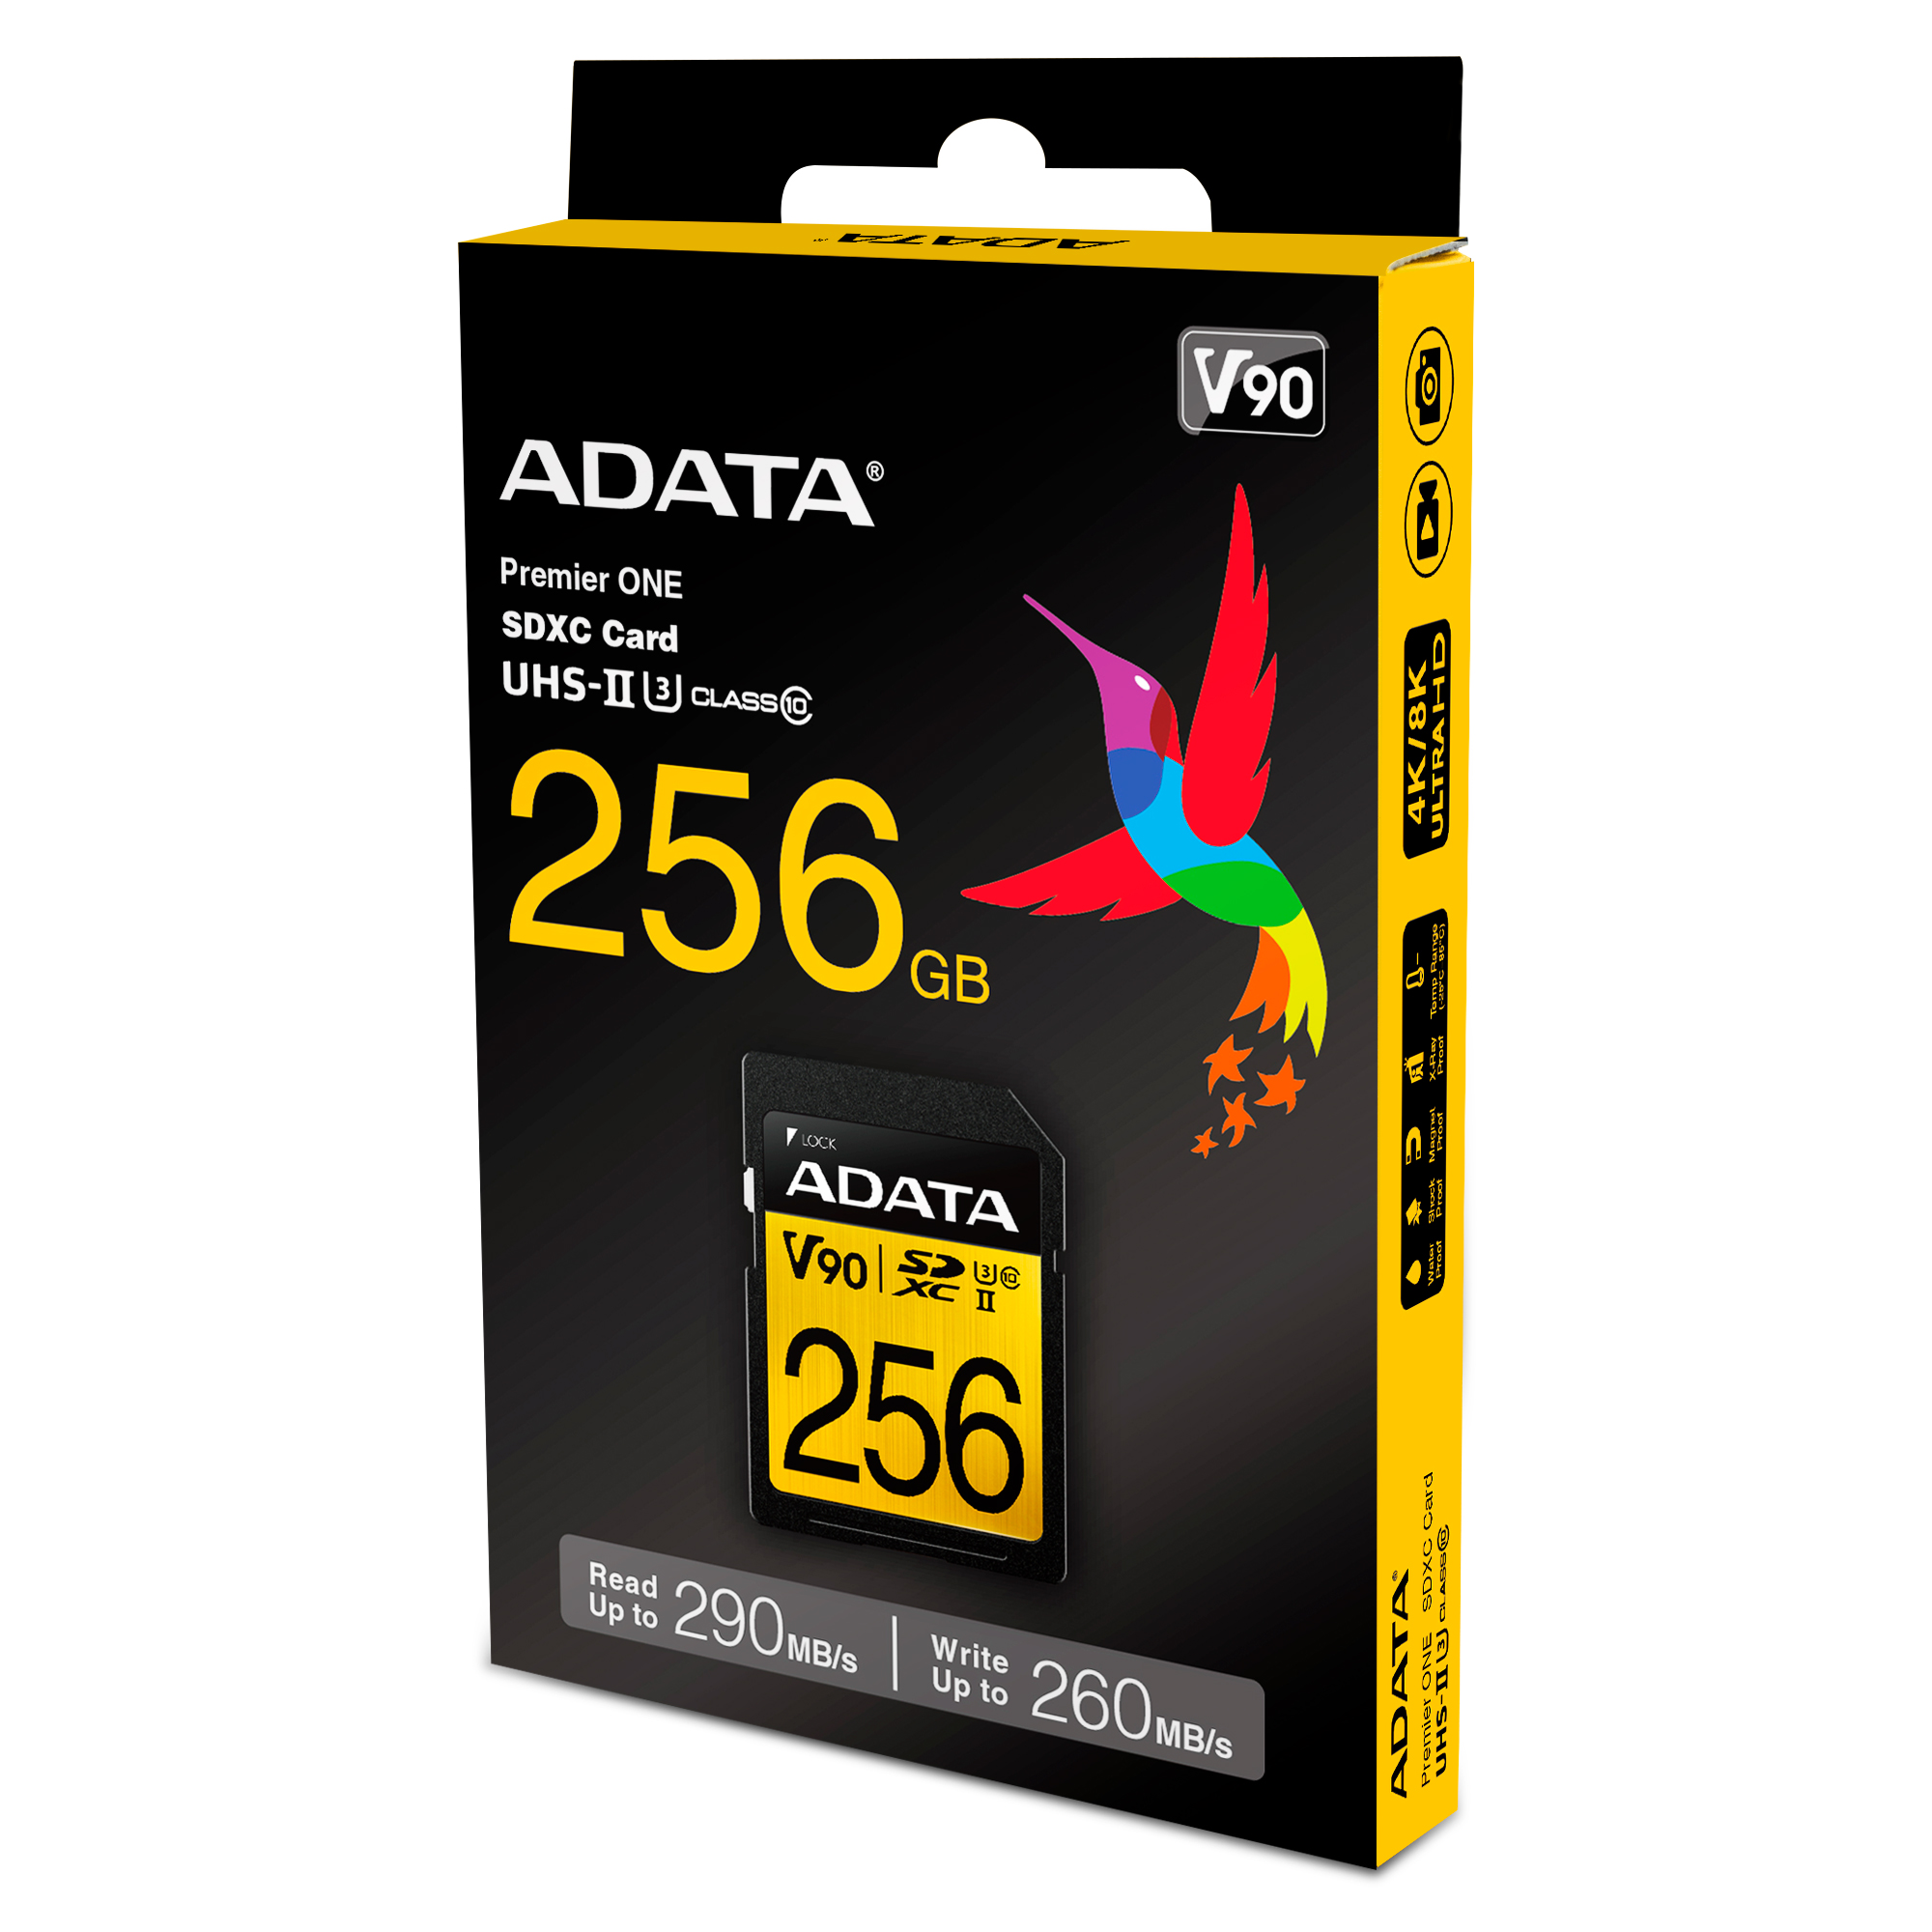 ADATA Premier ONE 64GB Class 10 SDXC USH-II U3 Memory Card 